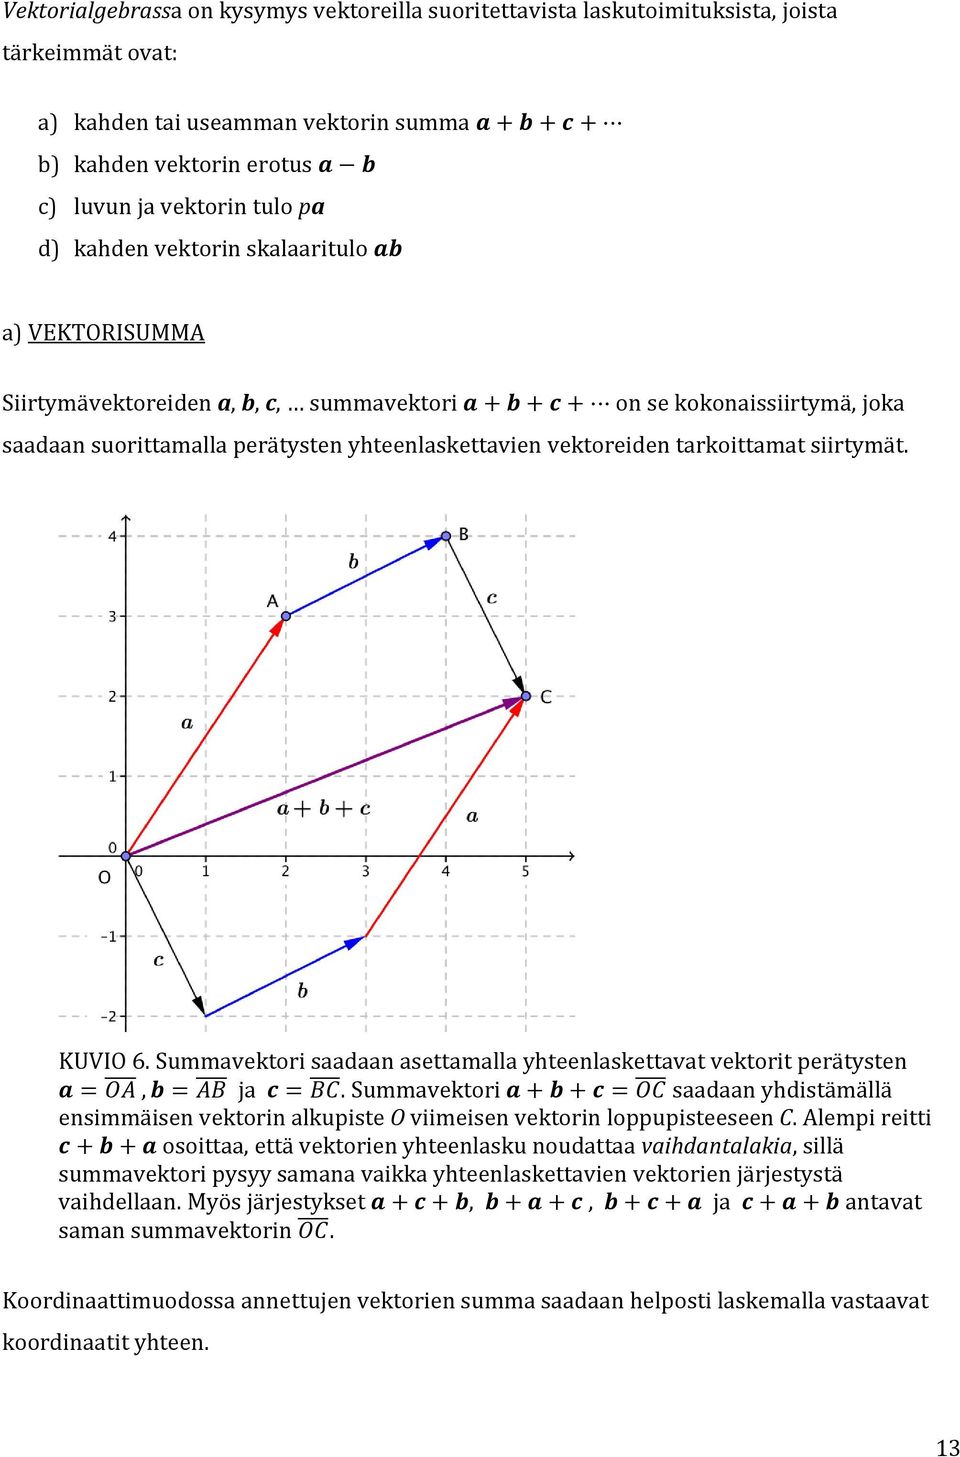 siirtymät. KUVIO 6. Summavektori saadaan asettamalla yhteenlaskettavat vektorit perätysten. Summavektori saadaan yhdistämällä ensimmäisen vektorin alkupiste O viimeisen vektorin loppupisteeseen C.